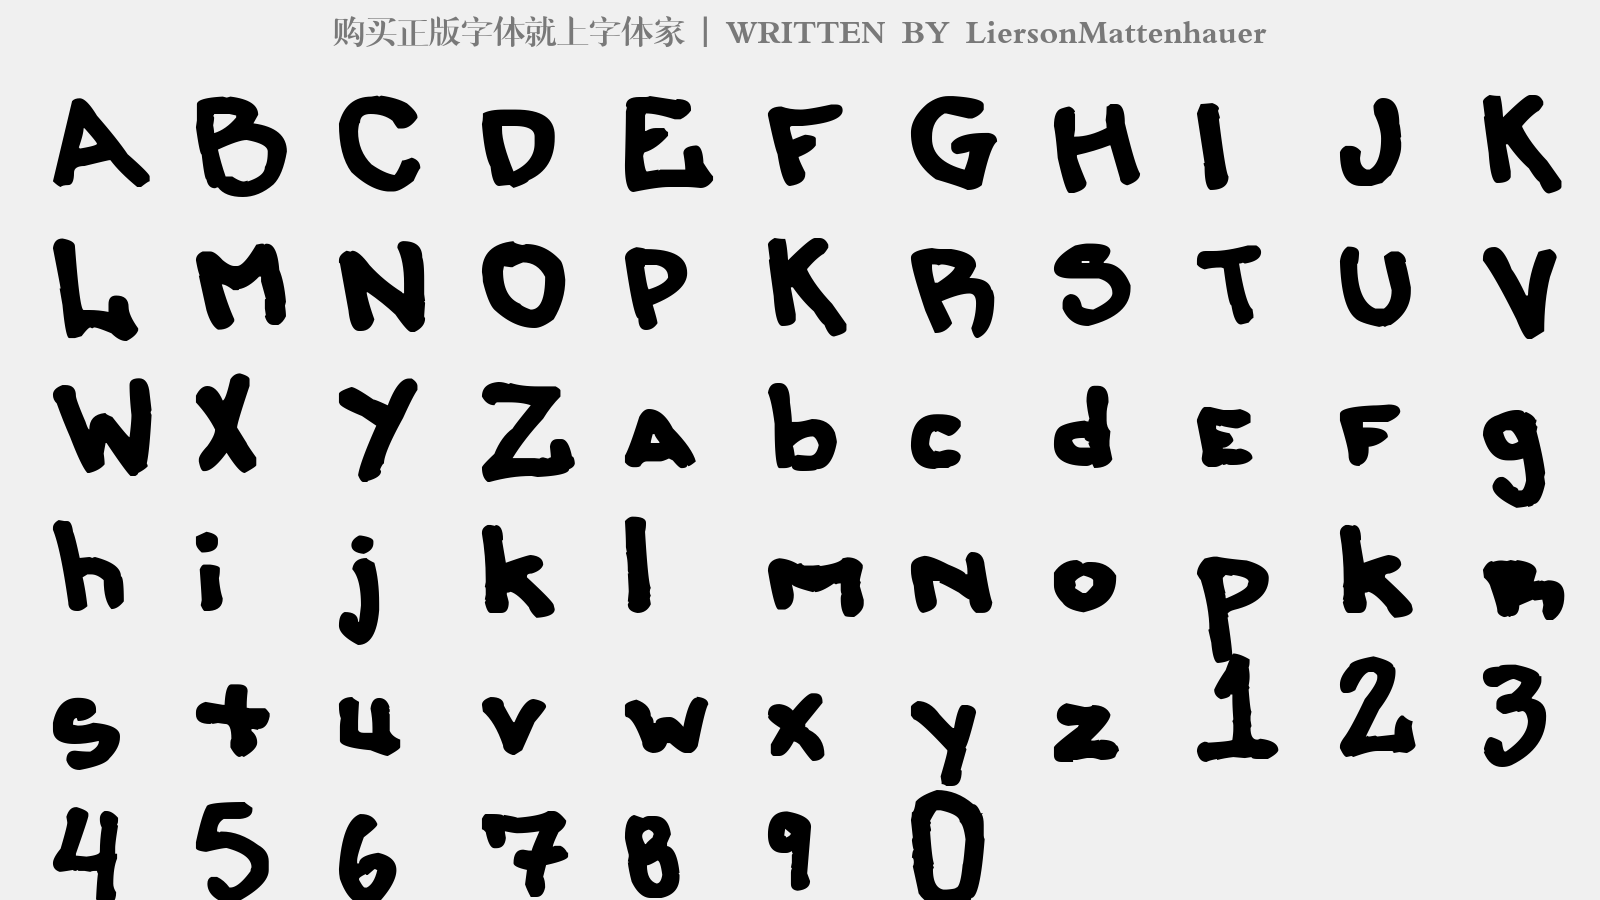 LiersonMattenhauer - 大写字母/小写字母/数字